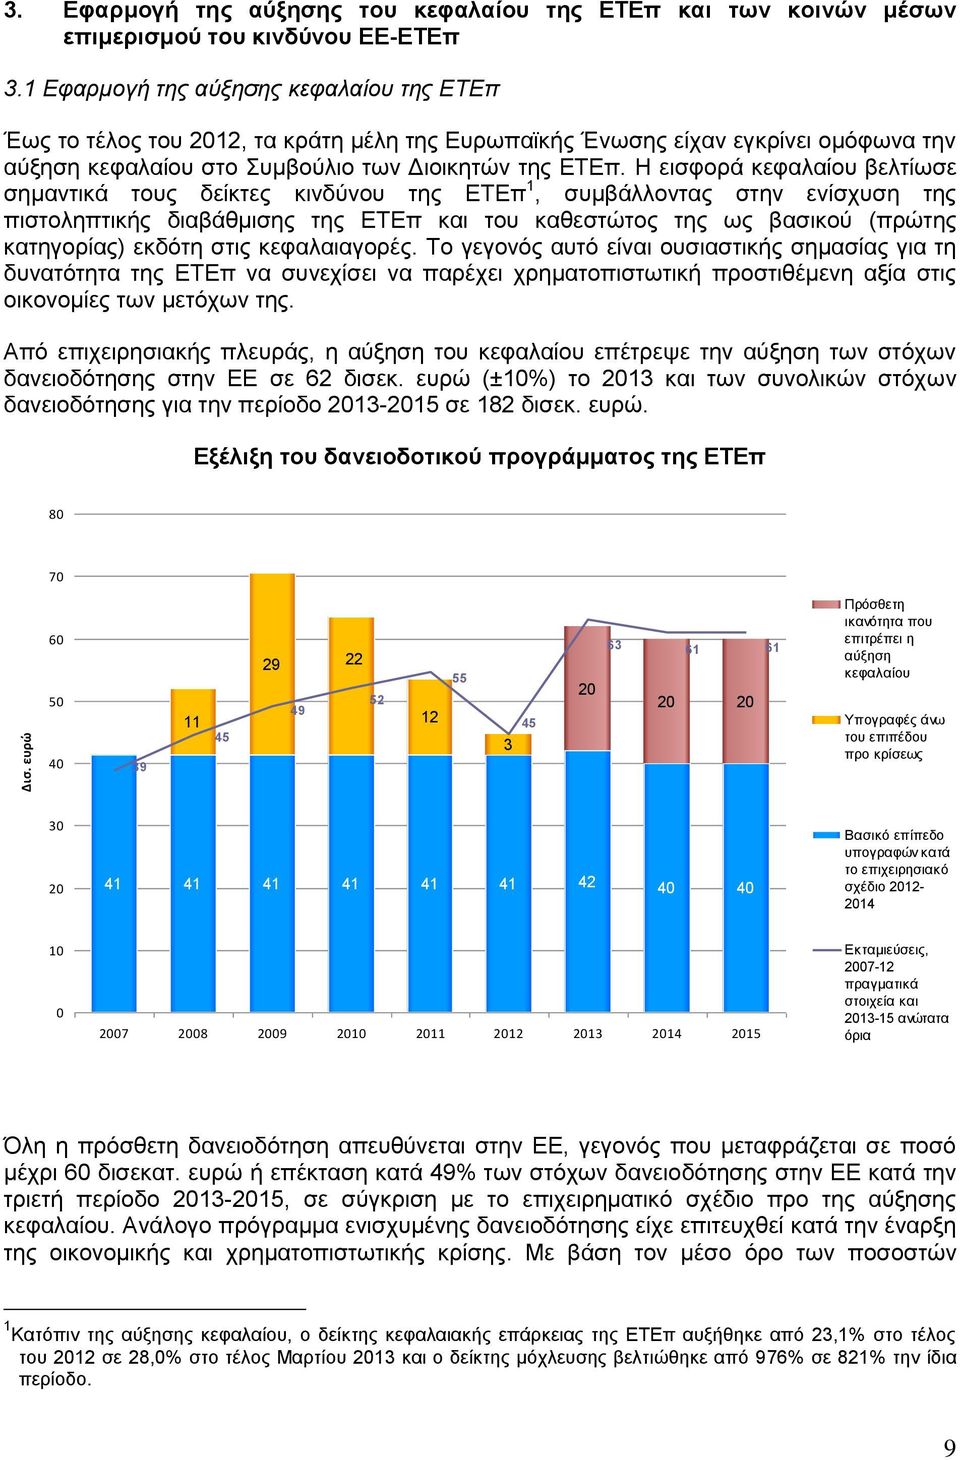 Η εισφορά κεφαλαίου βελτίωσε σημαντικά τους δείκτες κινδύνου της ΕΤΕπ 1, συμβάλλοντας στην ενίσχυση της πιστοληπτικής διαβάθμισης της ΕΤΕπ και του καθεστώτος της ως βασικού (πρώτης κατηγορίας) εκδότη